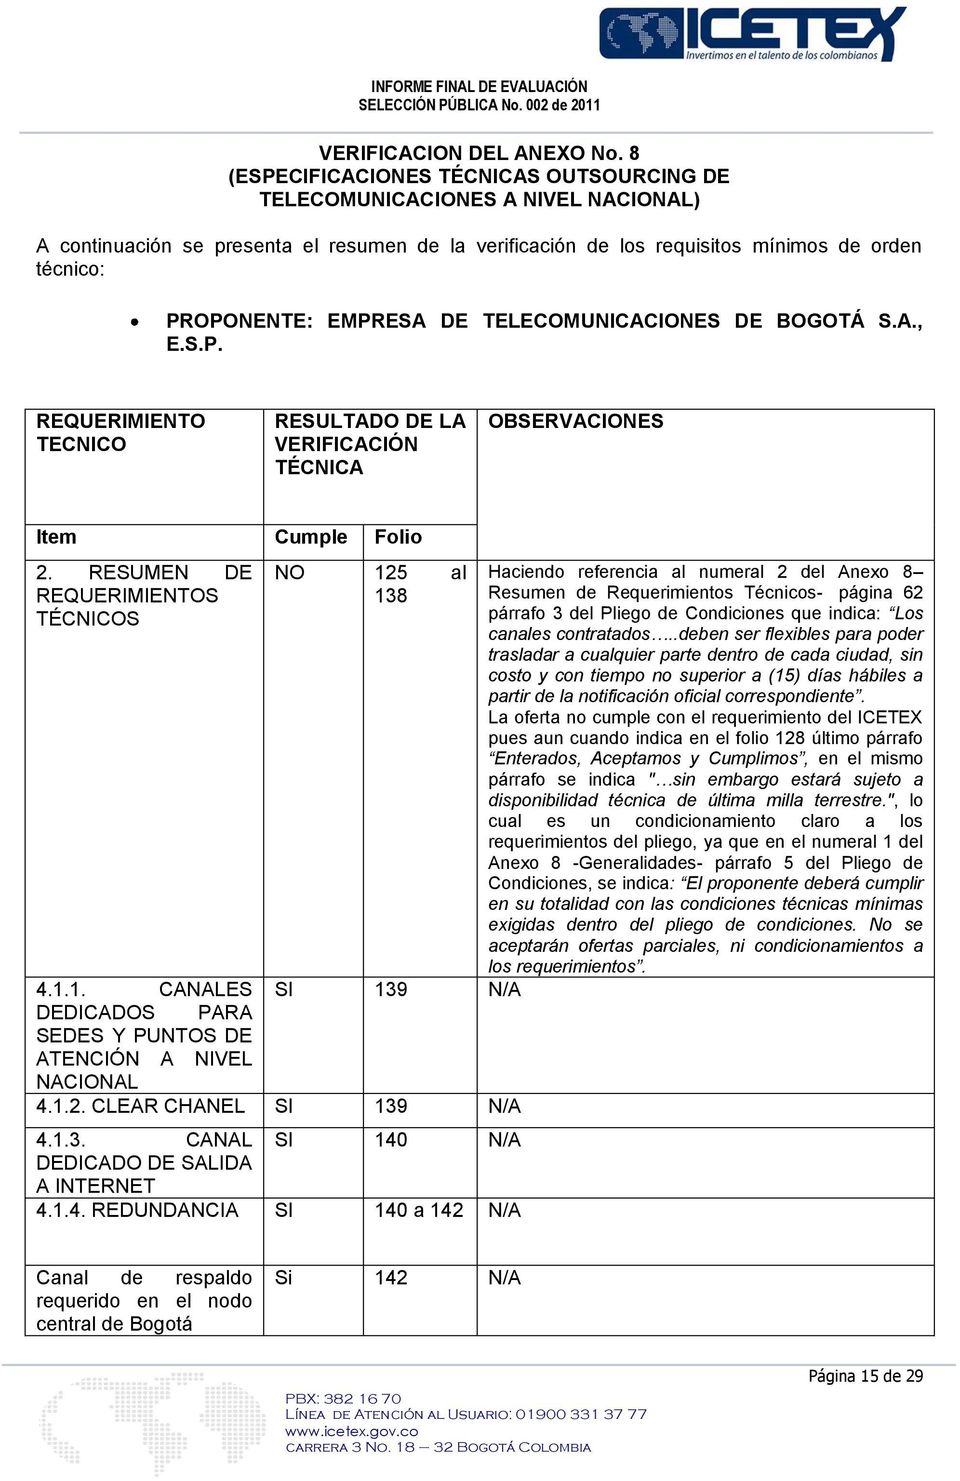 EMPRESA DE TELECOMUNICACIONES DE BOGOTÁ S.A., E.S.P. REQUERIMIENTO TECNICO RESULTADO DE LA VERIFICACIÓN TÉCNICA OBSERVACIONES Item Cumple Folio 2. RESUMEN DE REQUERIMIENTOS TÉCNICOS NO 12